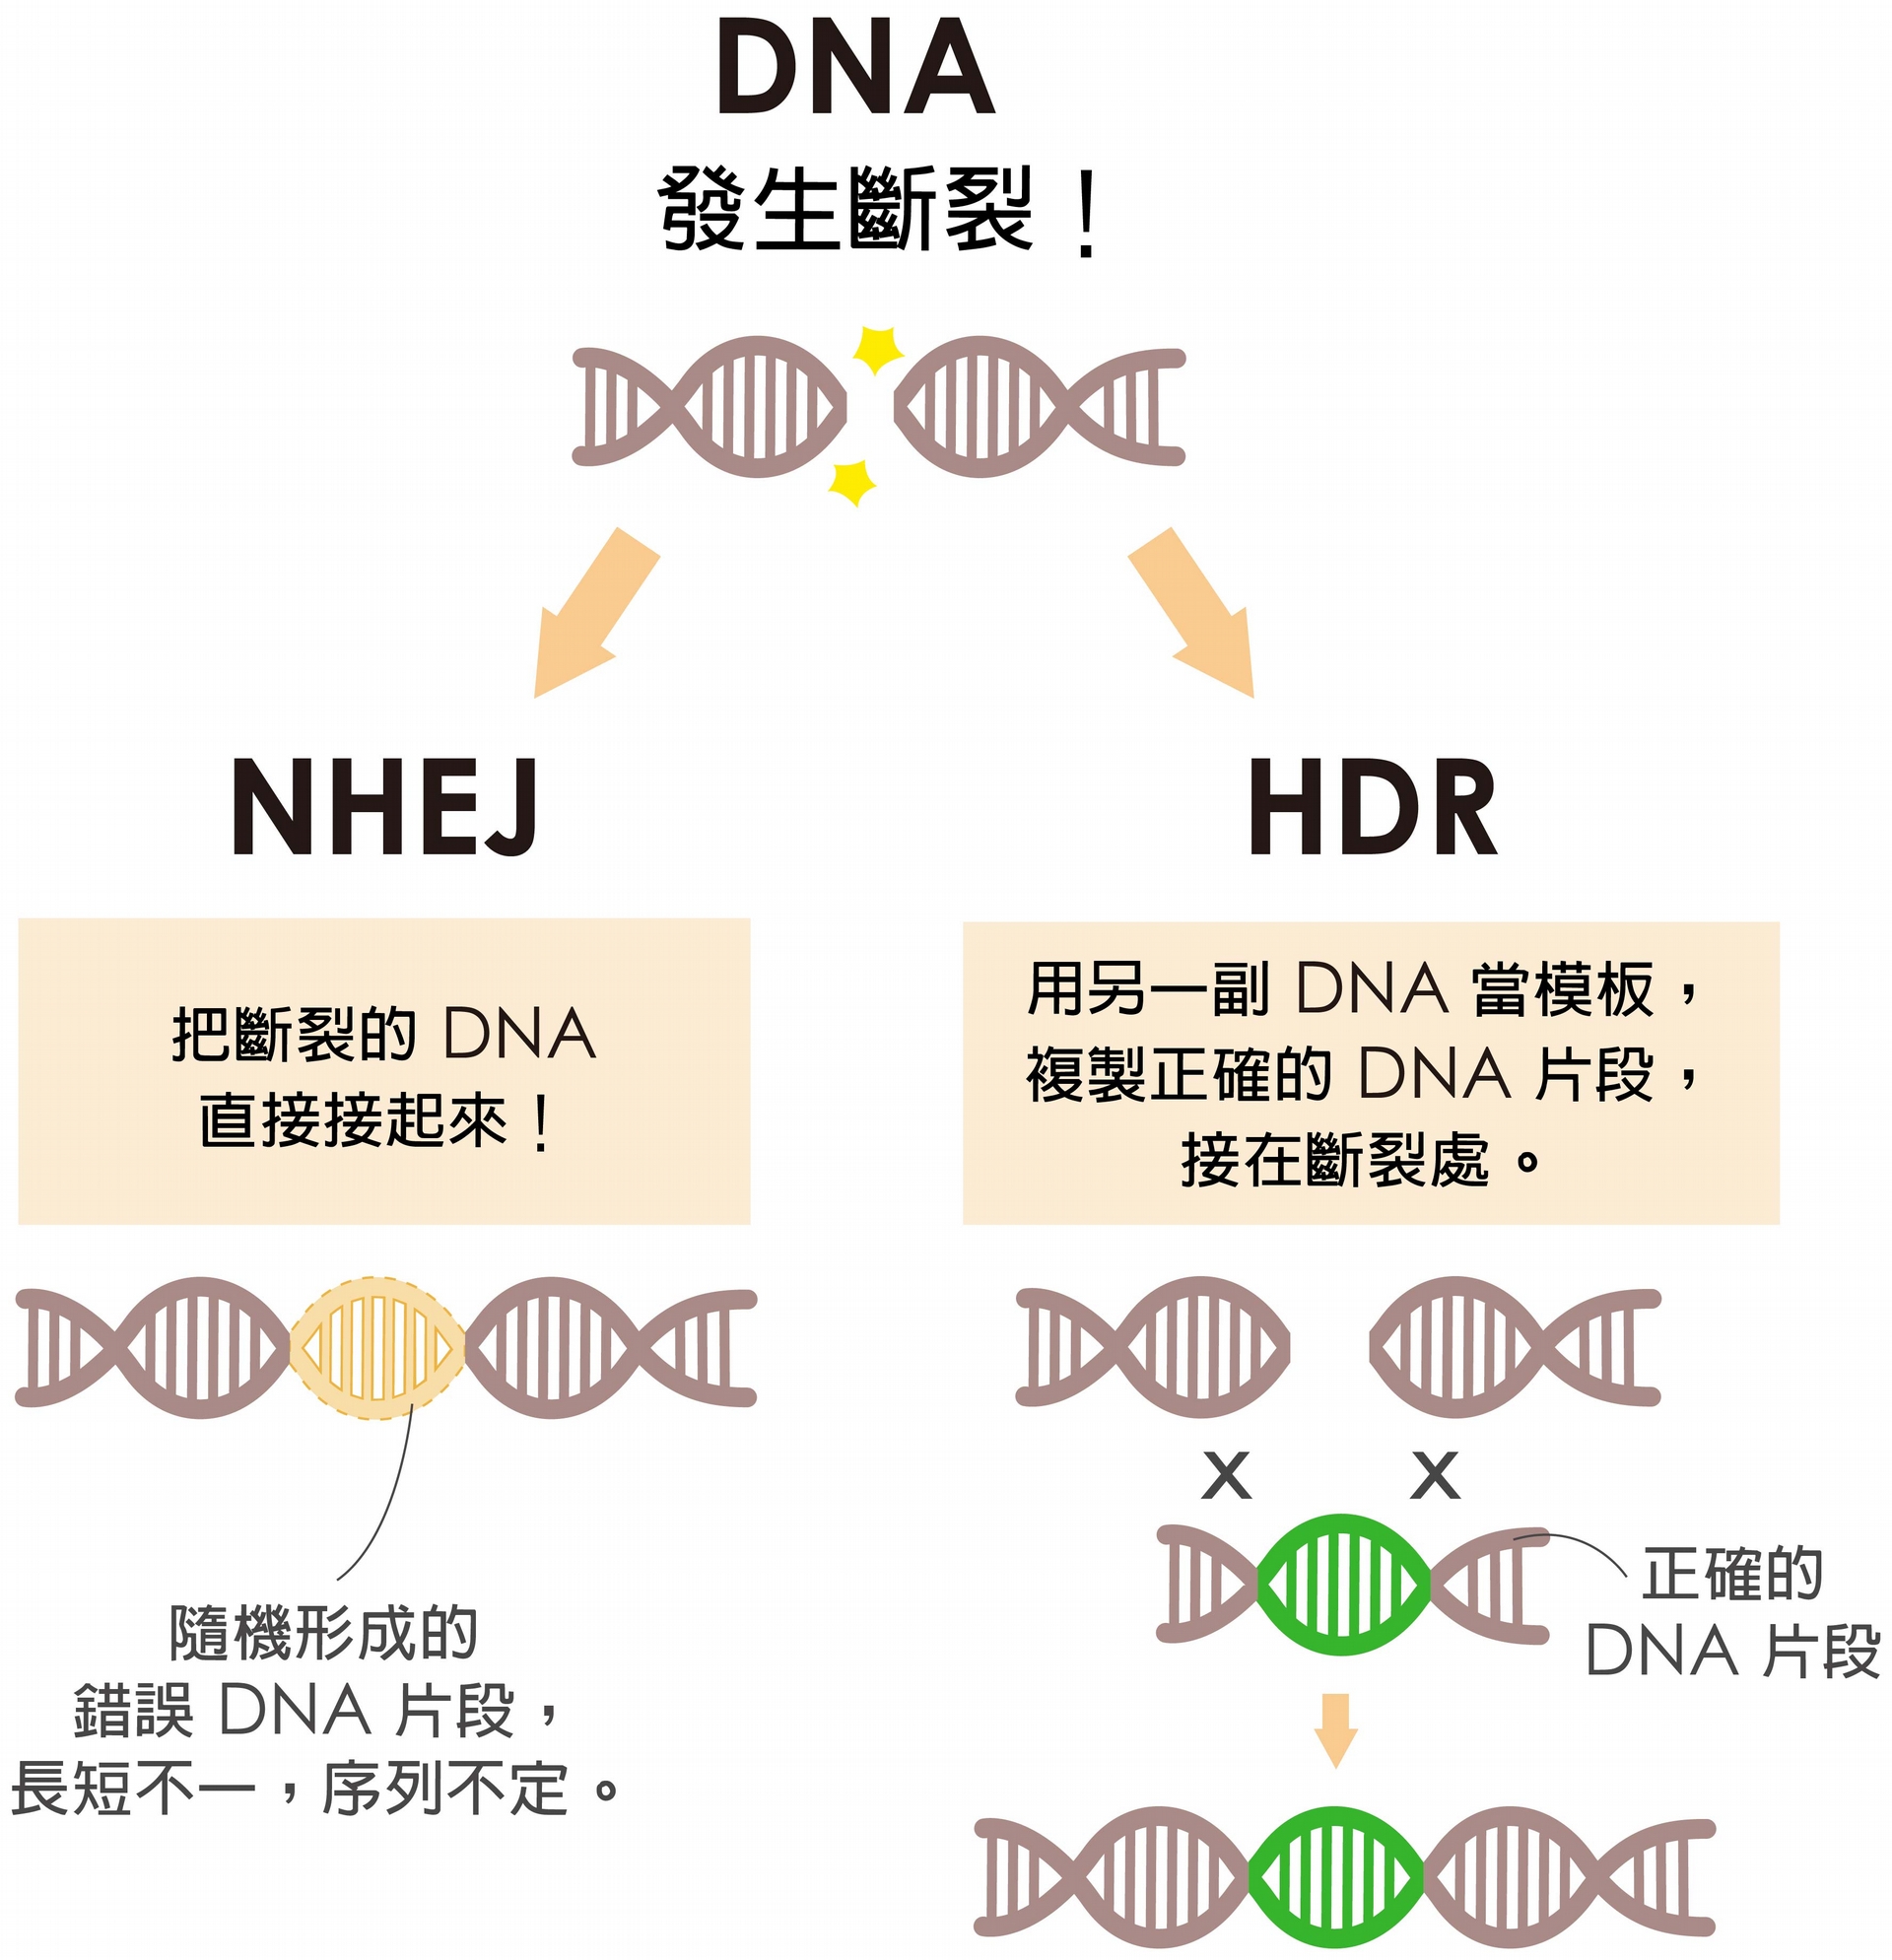 細胞修復 DNA 有兩條路，NHEJ 是直接把斷裂處接起來，HDR 是拿另一副 DNA 做模板複製正確的 DNA 片段，接在斷裂處。當細胞選擇走 HDR，才有可能接受外界送入的正確基因。 圖說設計│黃曉君、林洵安 資料來源│凌嘉鴻 